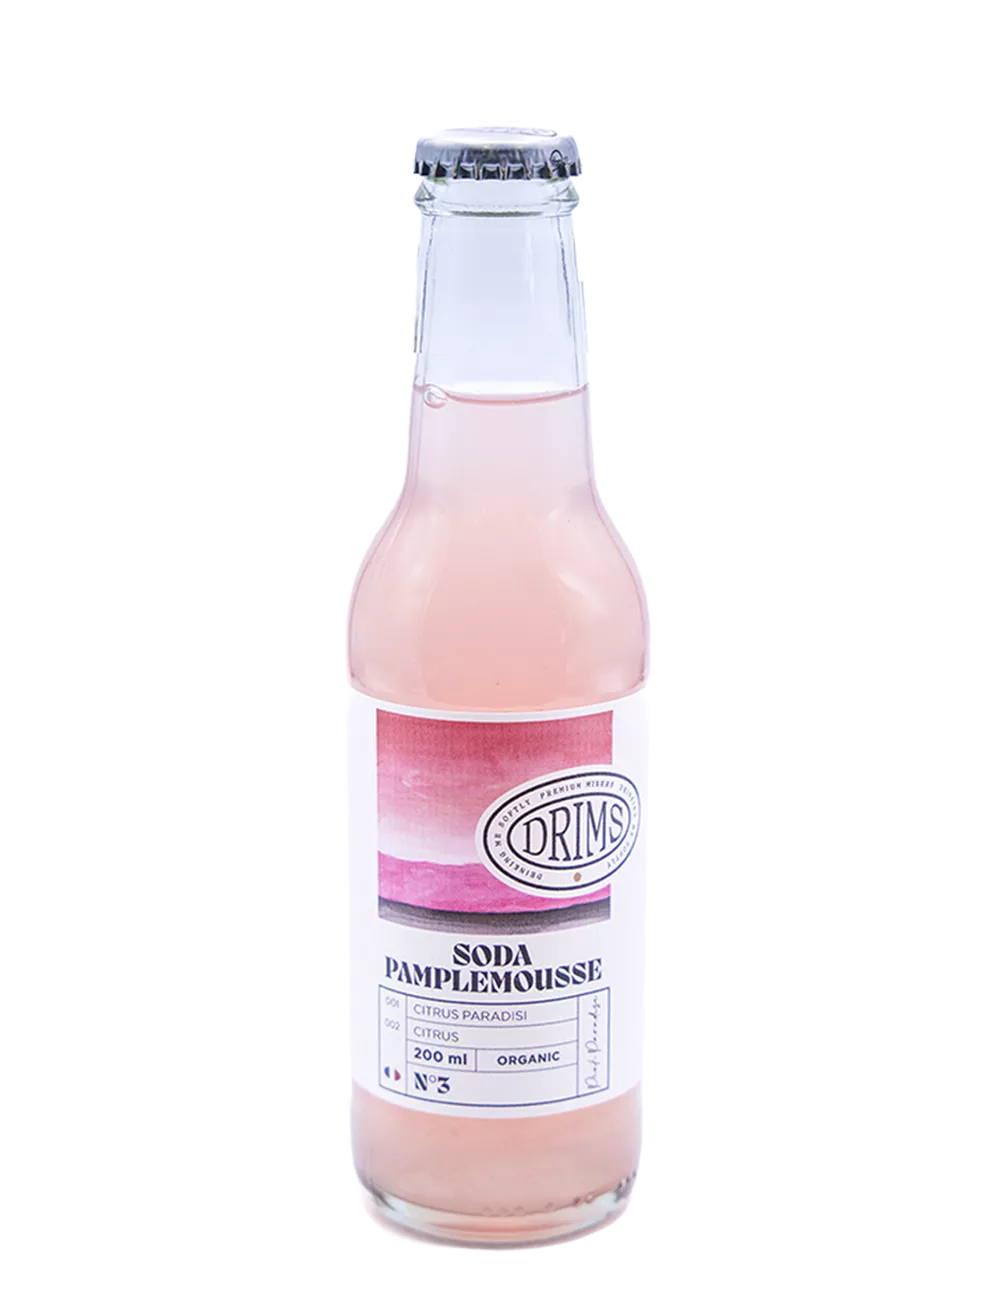 Drims - Pamplemousse - Soft drink